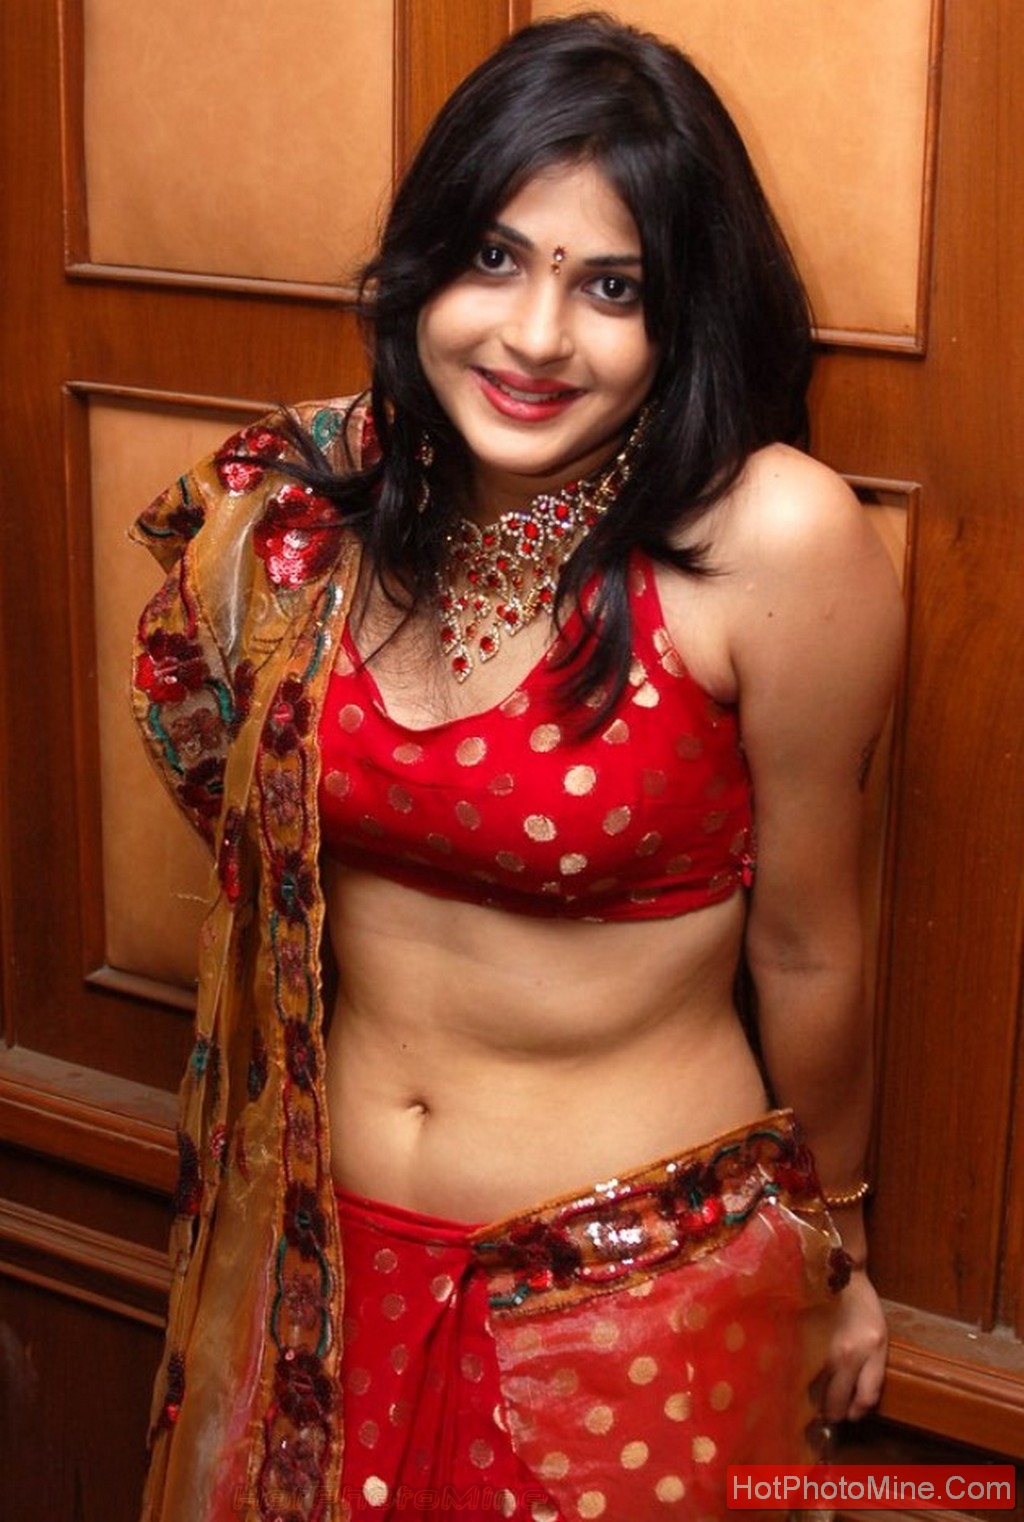 Sauth Indian Acter Xxx Hd Video - Top South Indian Actress Desi Masala pics Damnn Hot Photos ...